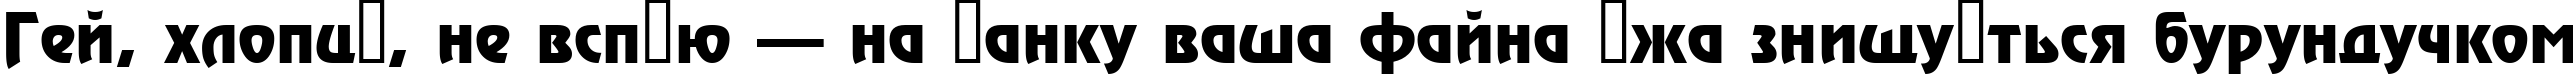 Пример написания шрифтом a_Rewinder Bold текста на украинском